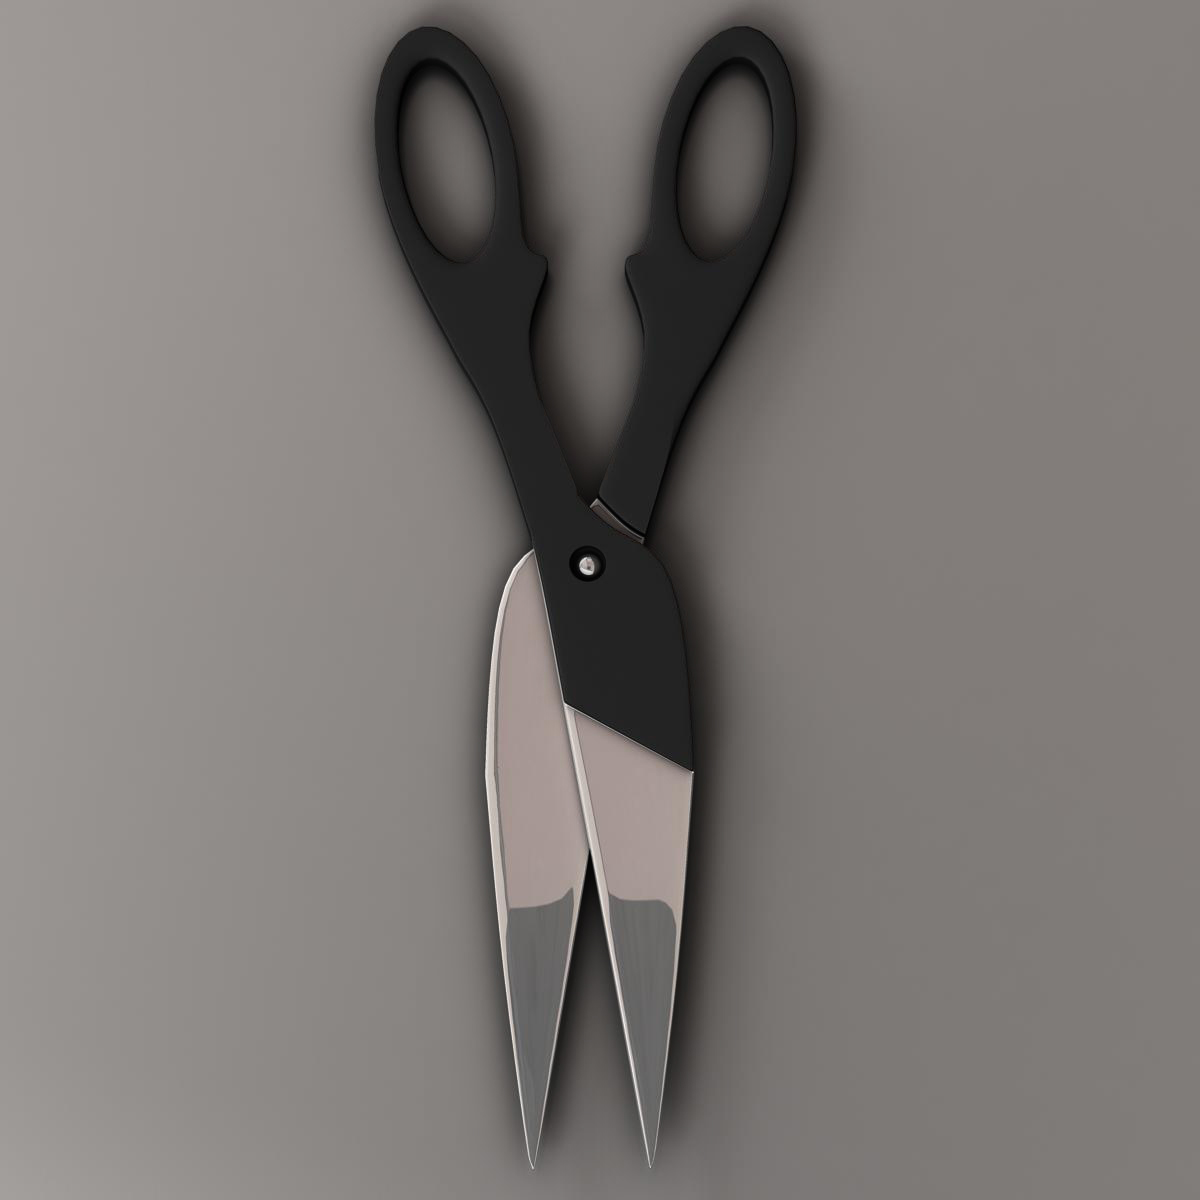 scissors v3 3d model 3ds max fbx c4d ma mb obj 159095